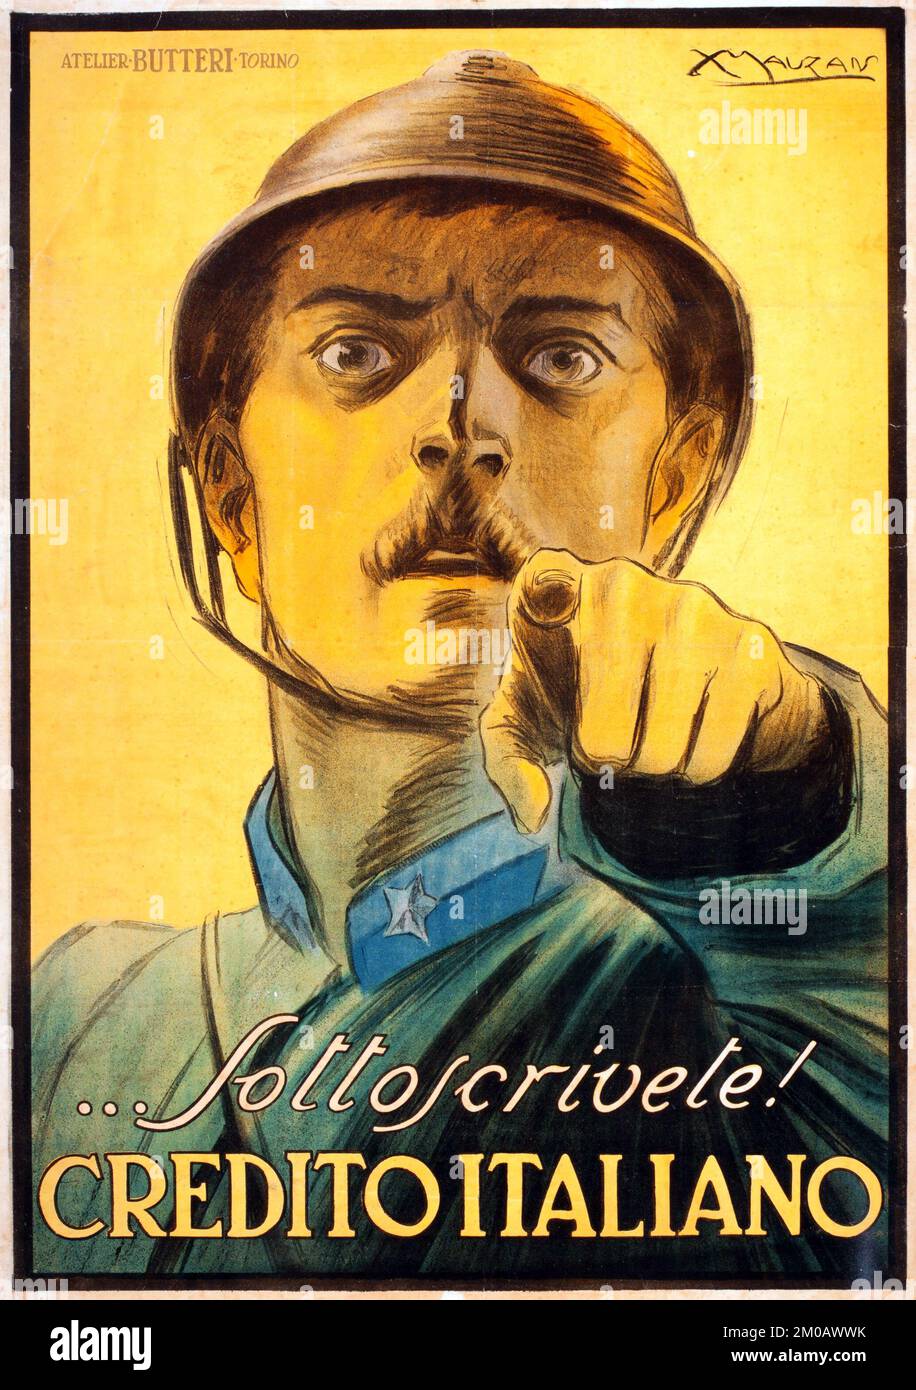 LUCIANO ACHILLE MAUZAN (francés: Italiano, 1883-1952). Sottoscrivete! Credito Italiano, 1917 Foto de stock